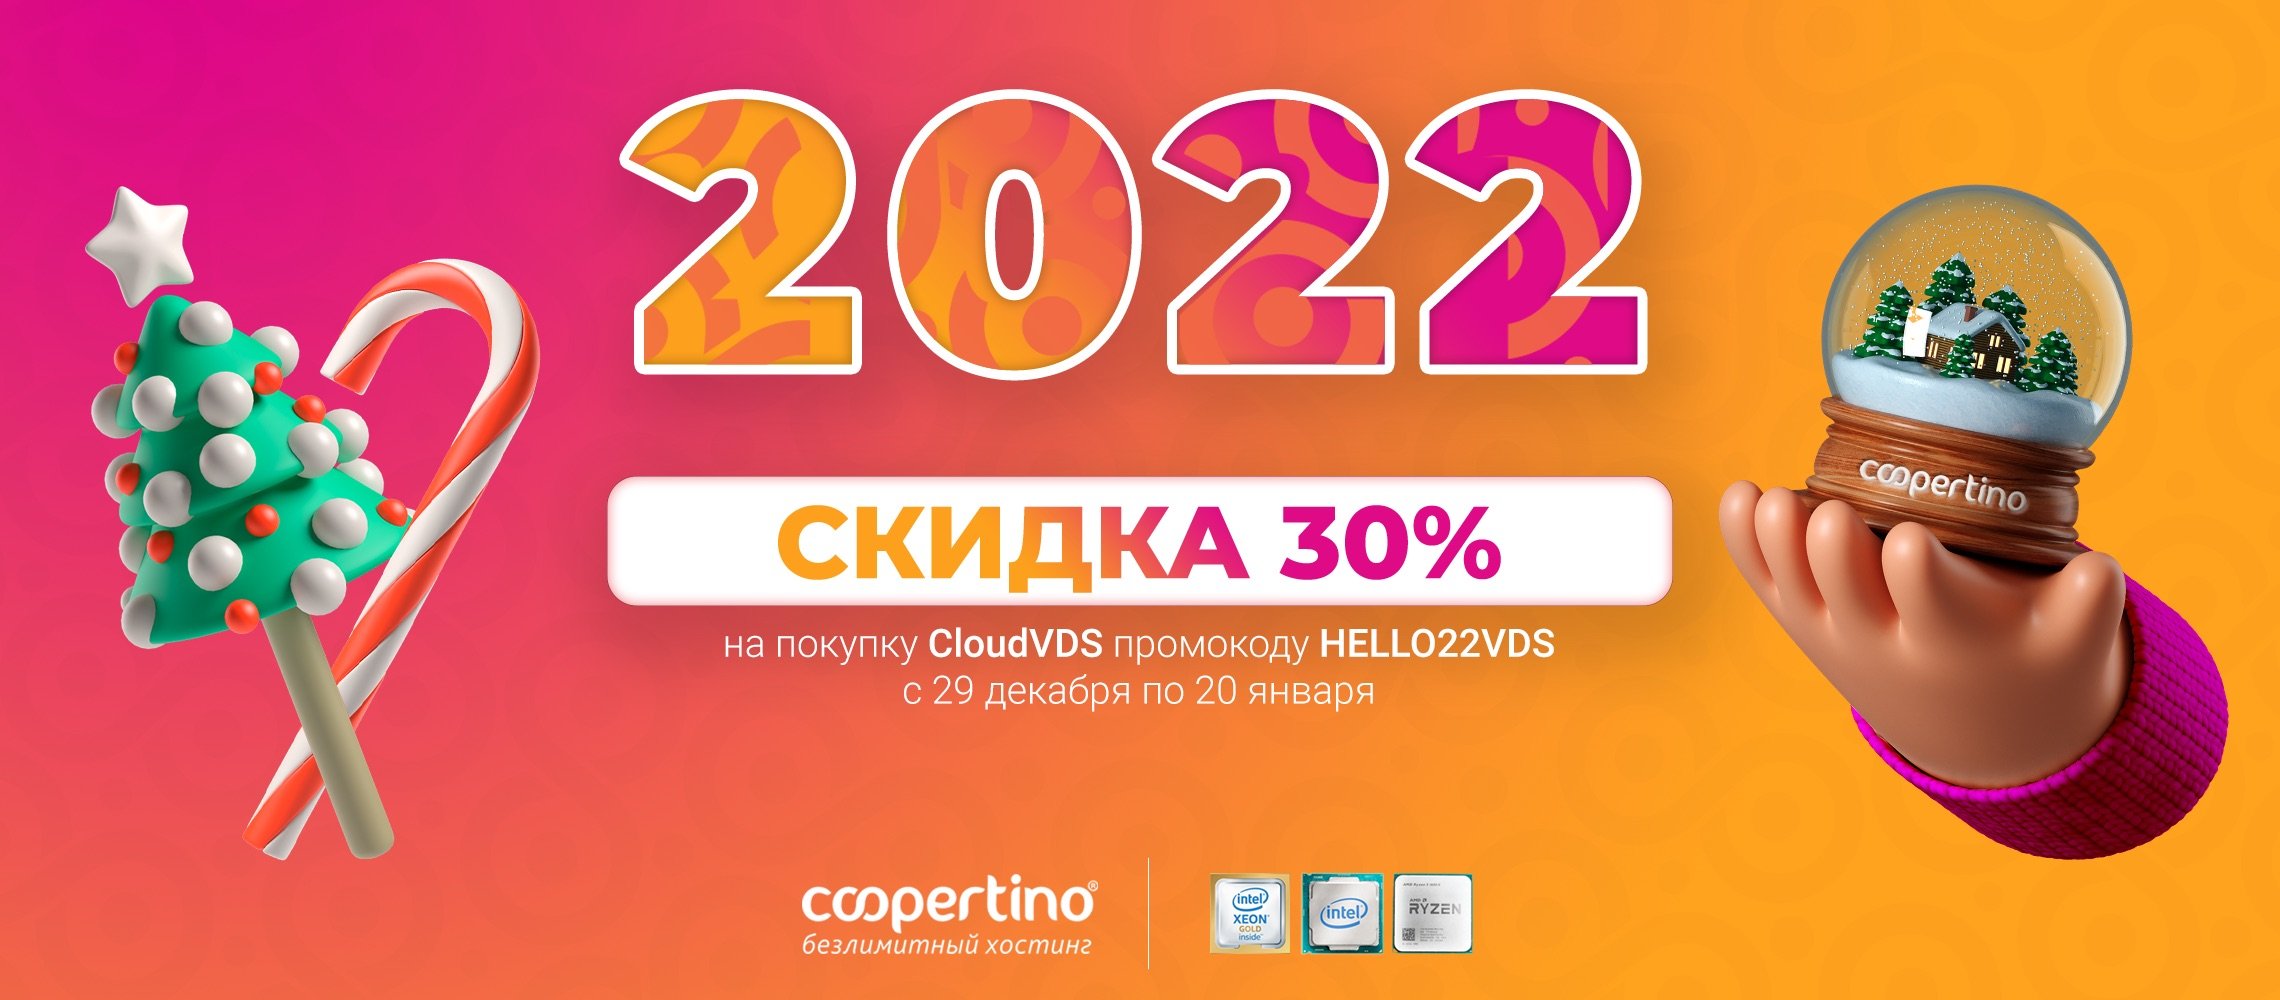 coopertino-new-year-2022.jpeg